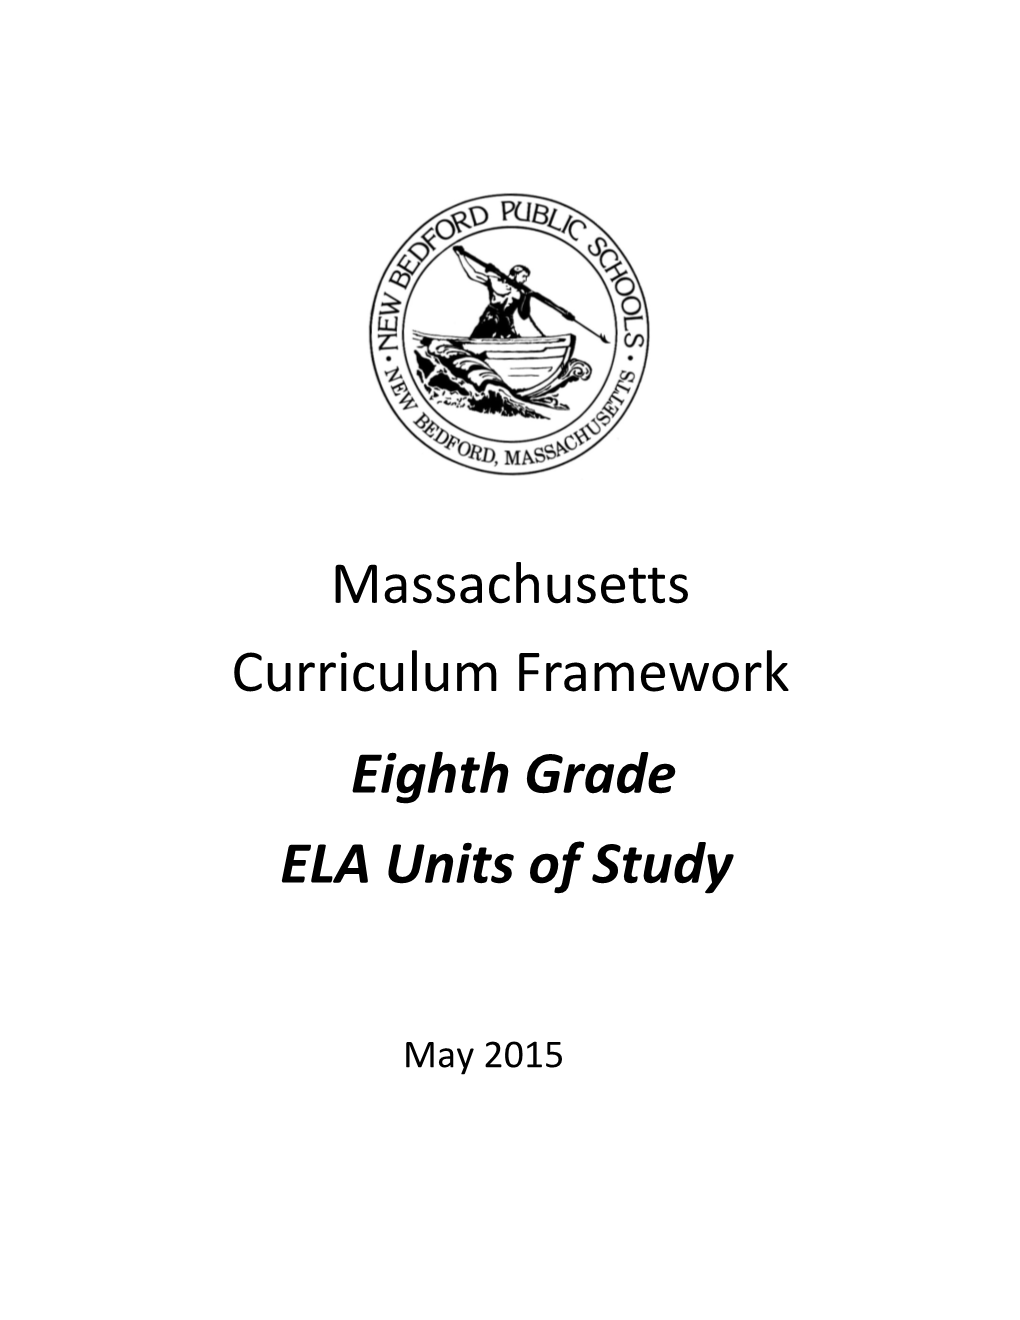 Massachusetts Curriculum Framework Eighth Grade ELA Units of Study